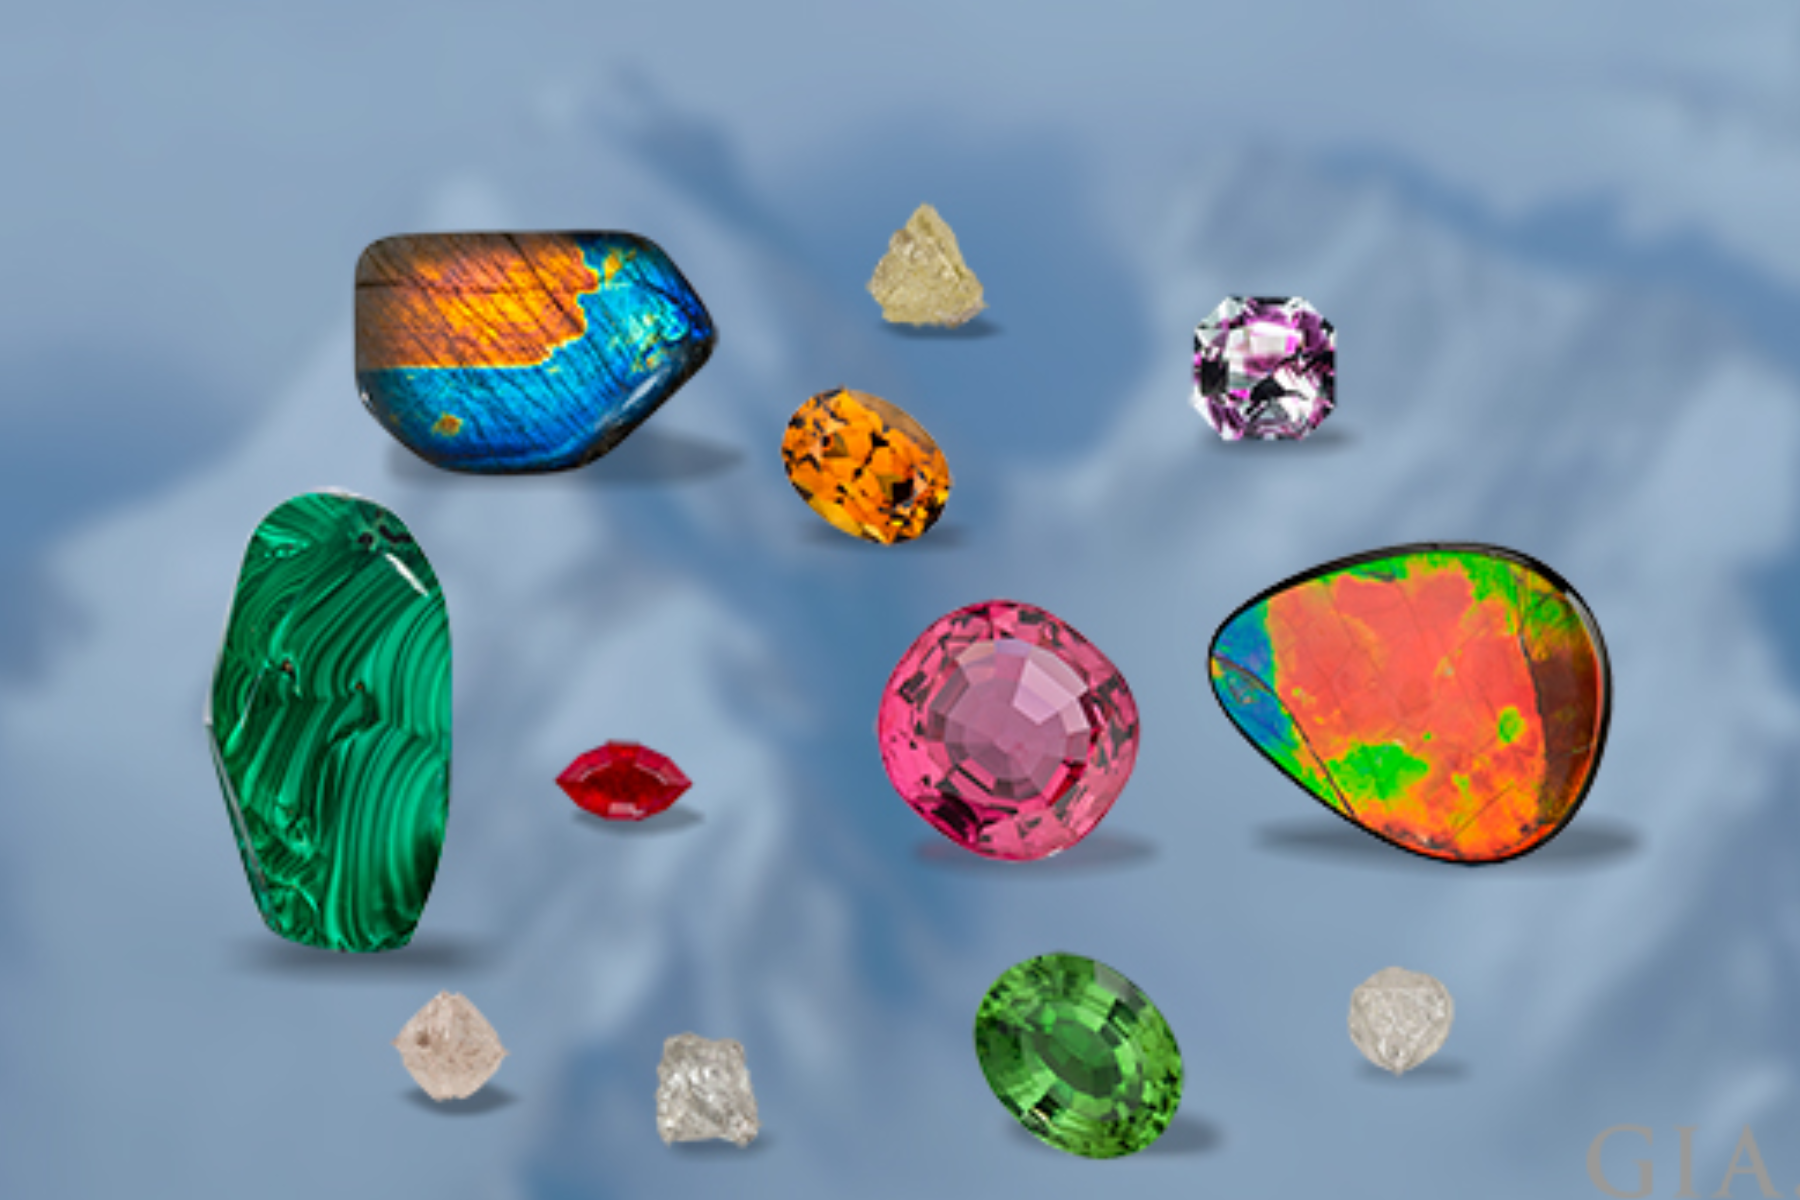 Gemstones of various sorts